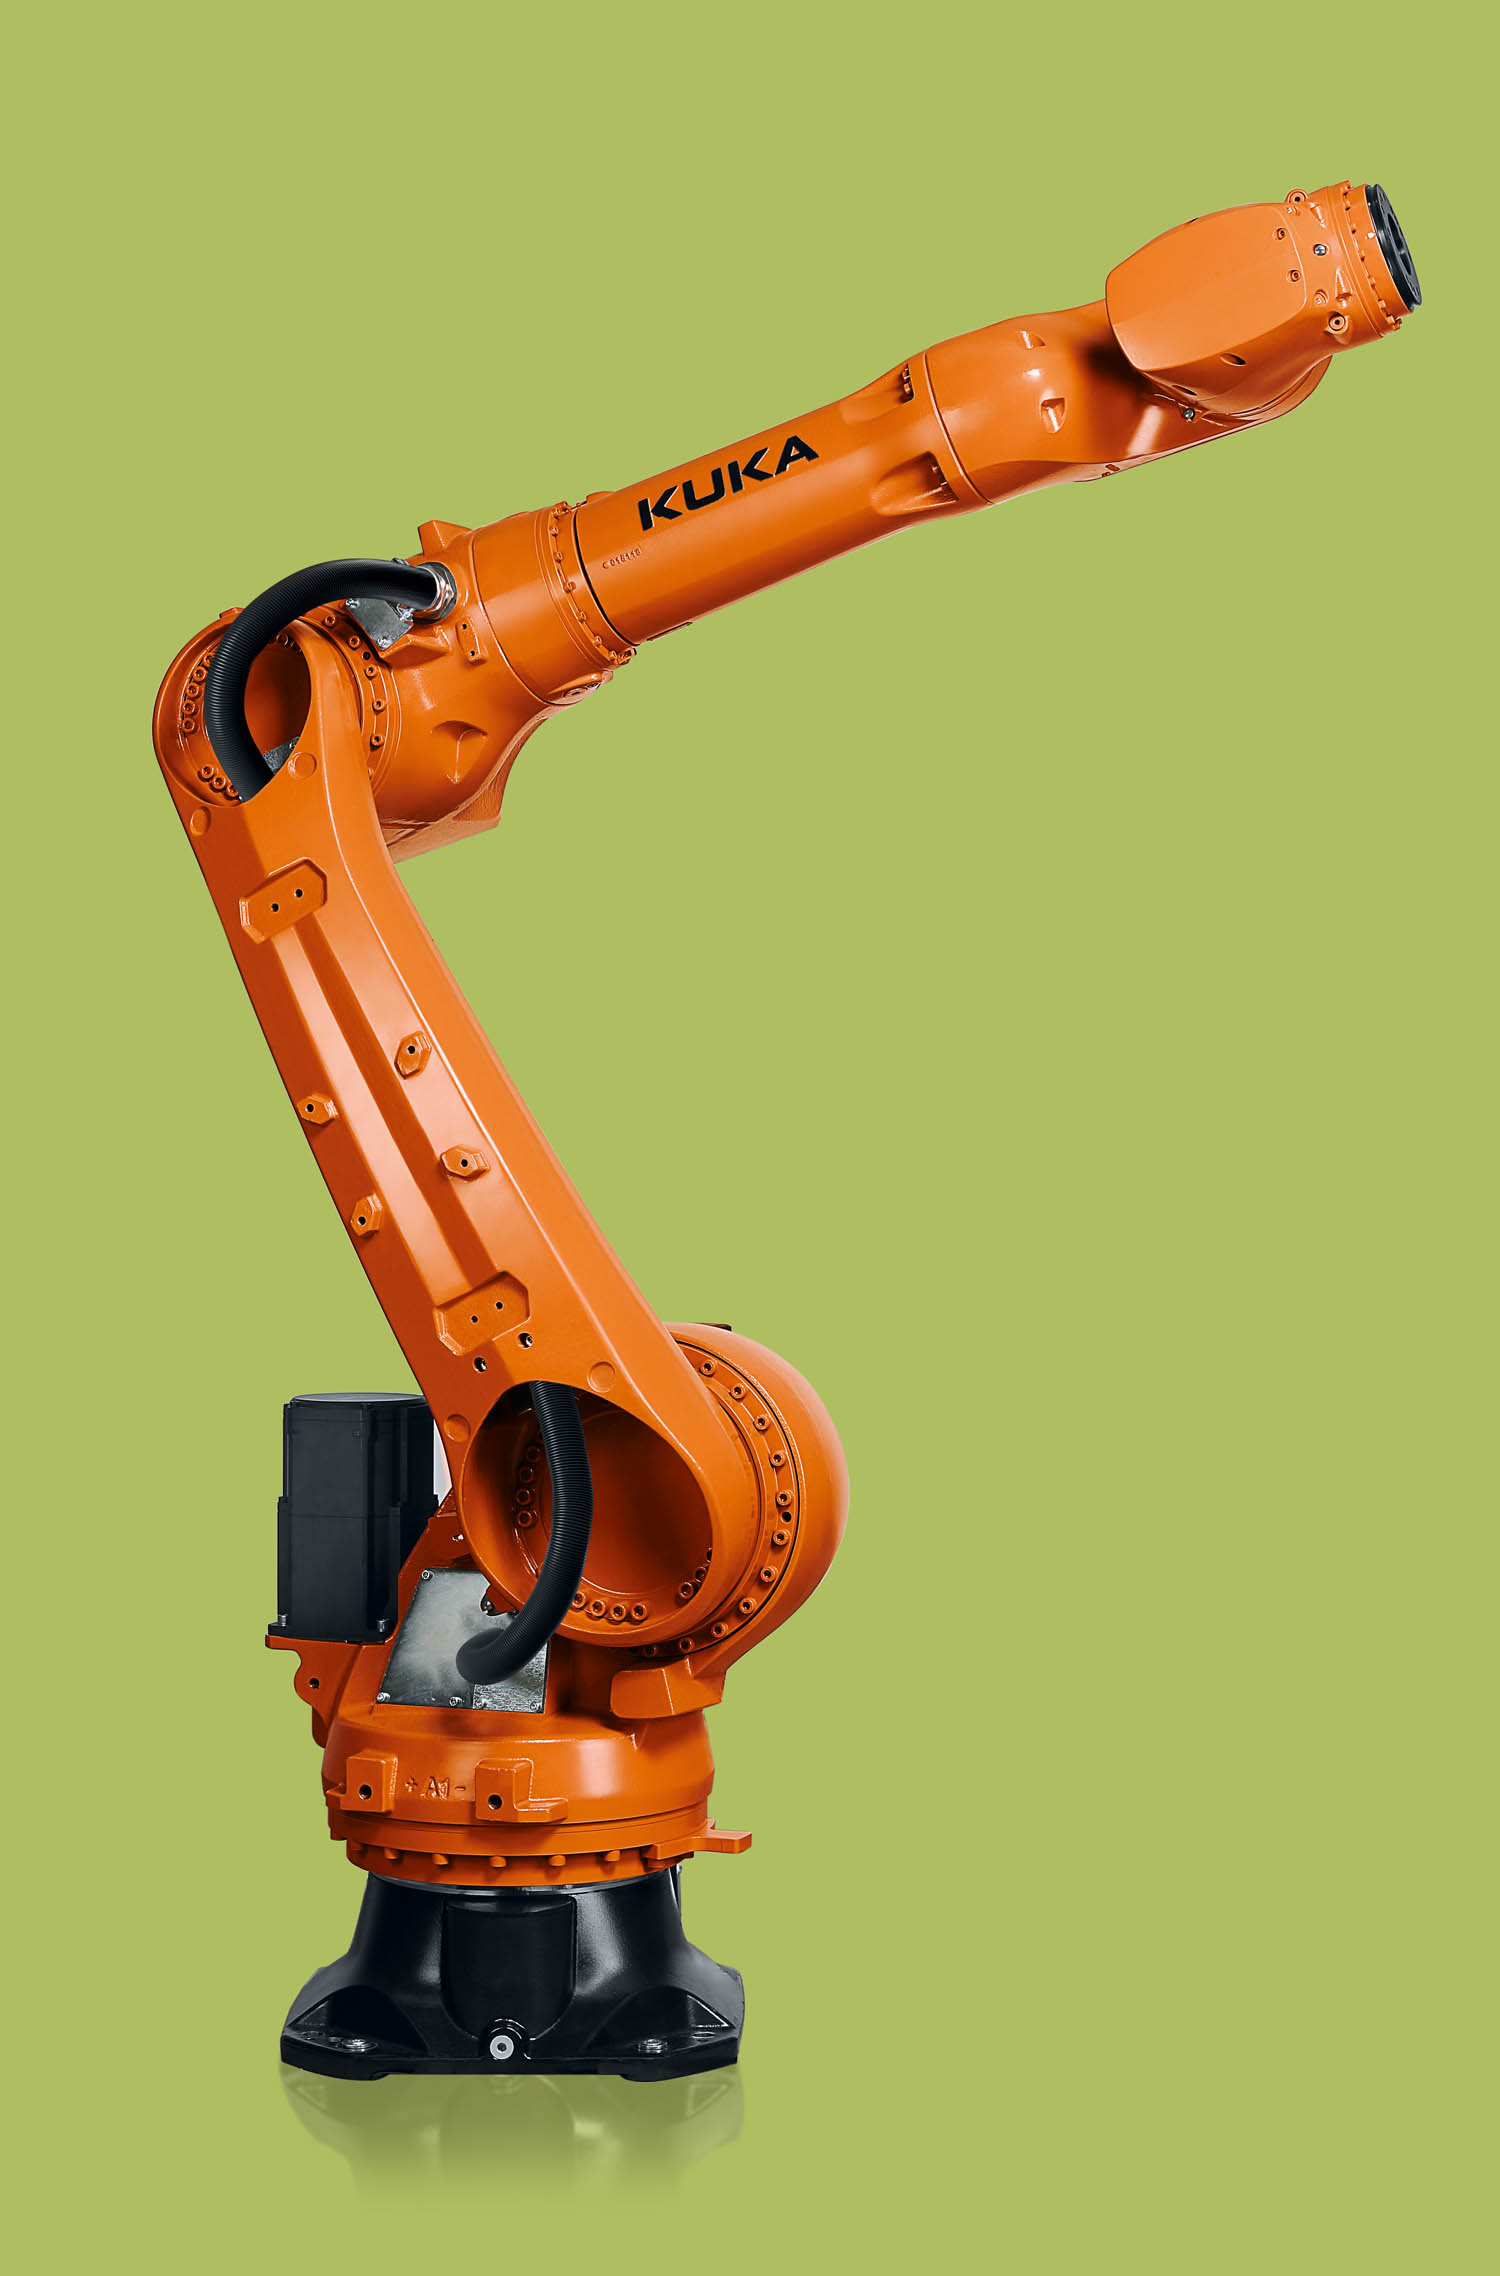 Kuka KR Iontec robot - AI design and robotics